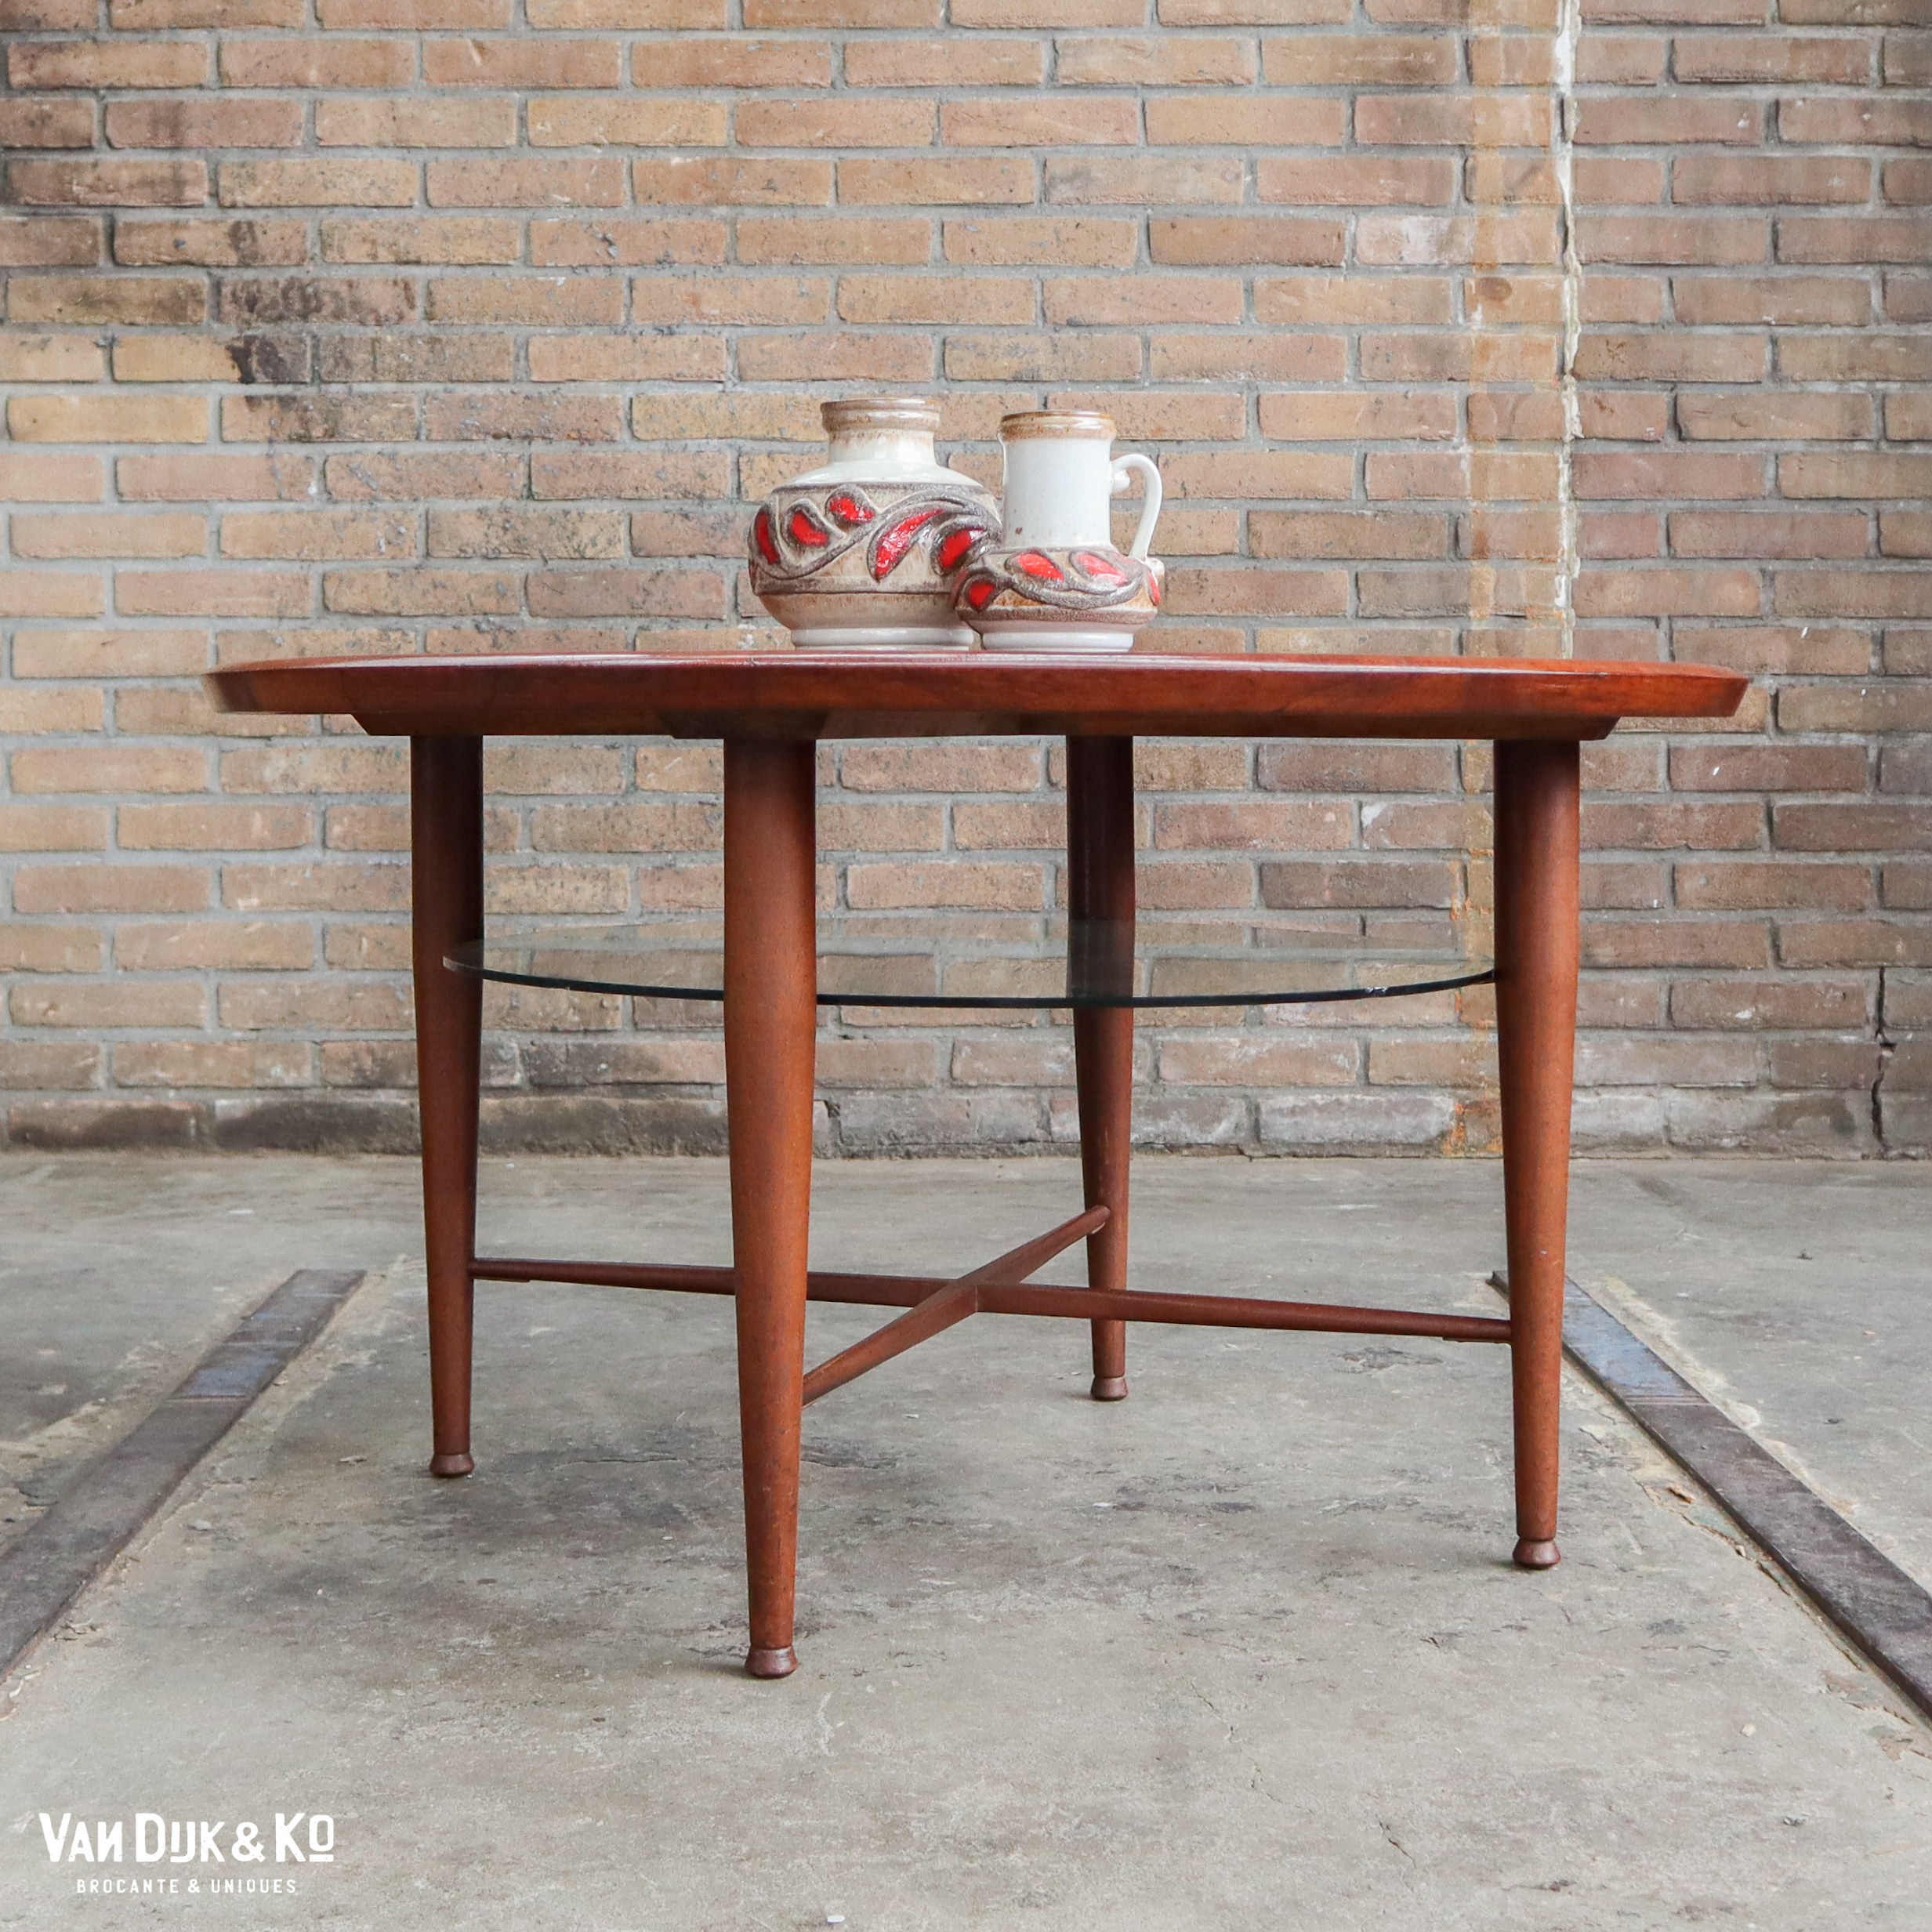 nauwkeurig rechter magnifiek Vintage ronde salontafel » Van Dijk & Ko